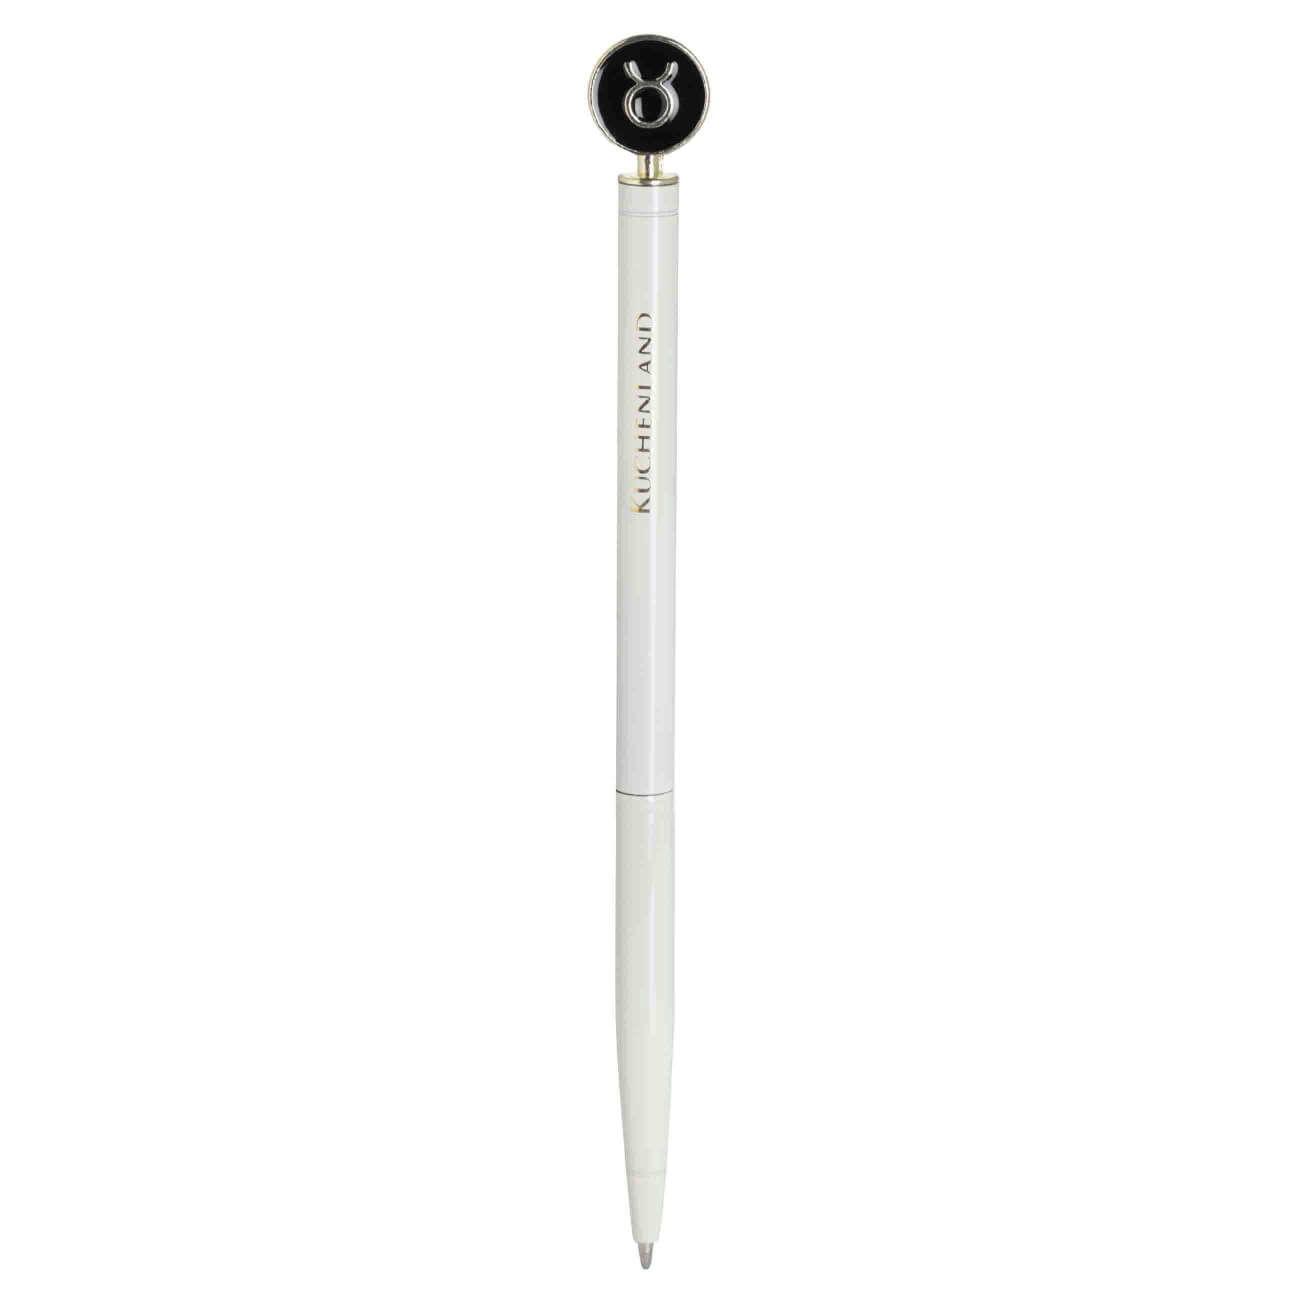 Ручка шариковая, 15 см, с фигуркой, сталь, молочно-золотистая, Телец, Zodiac